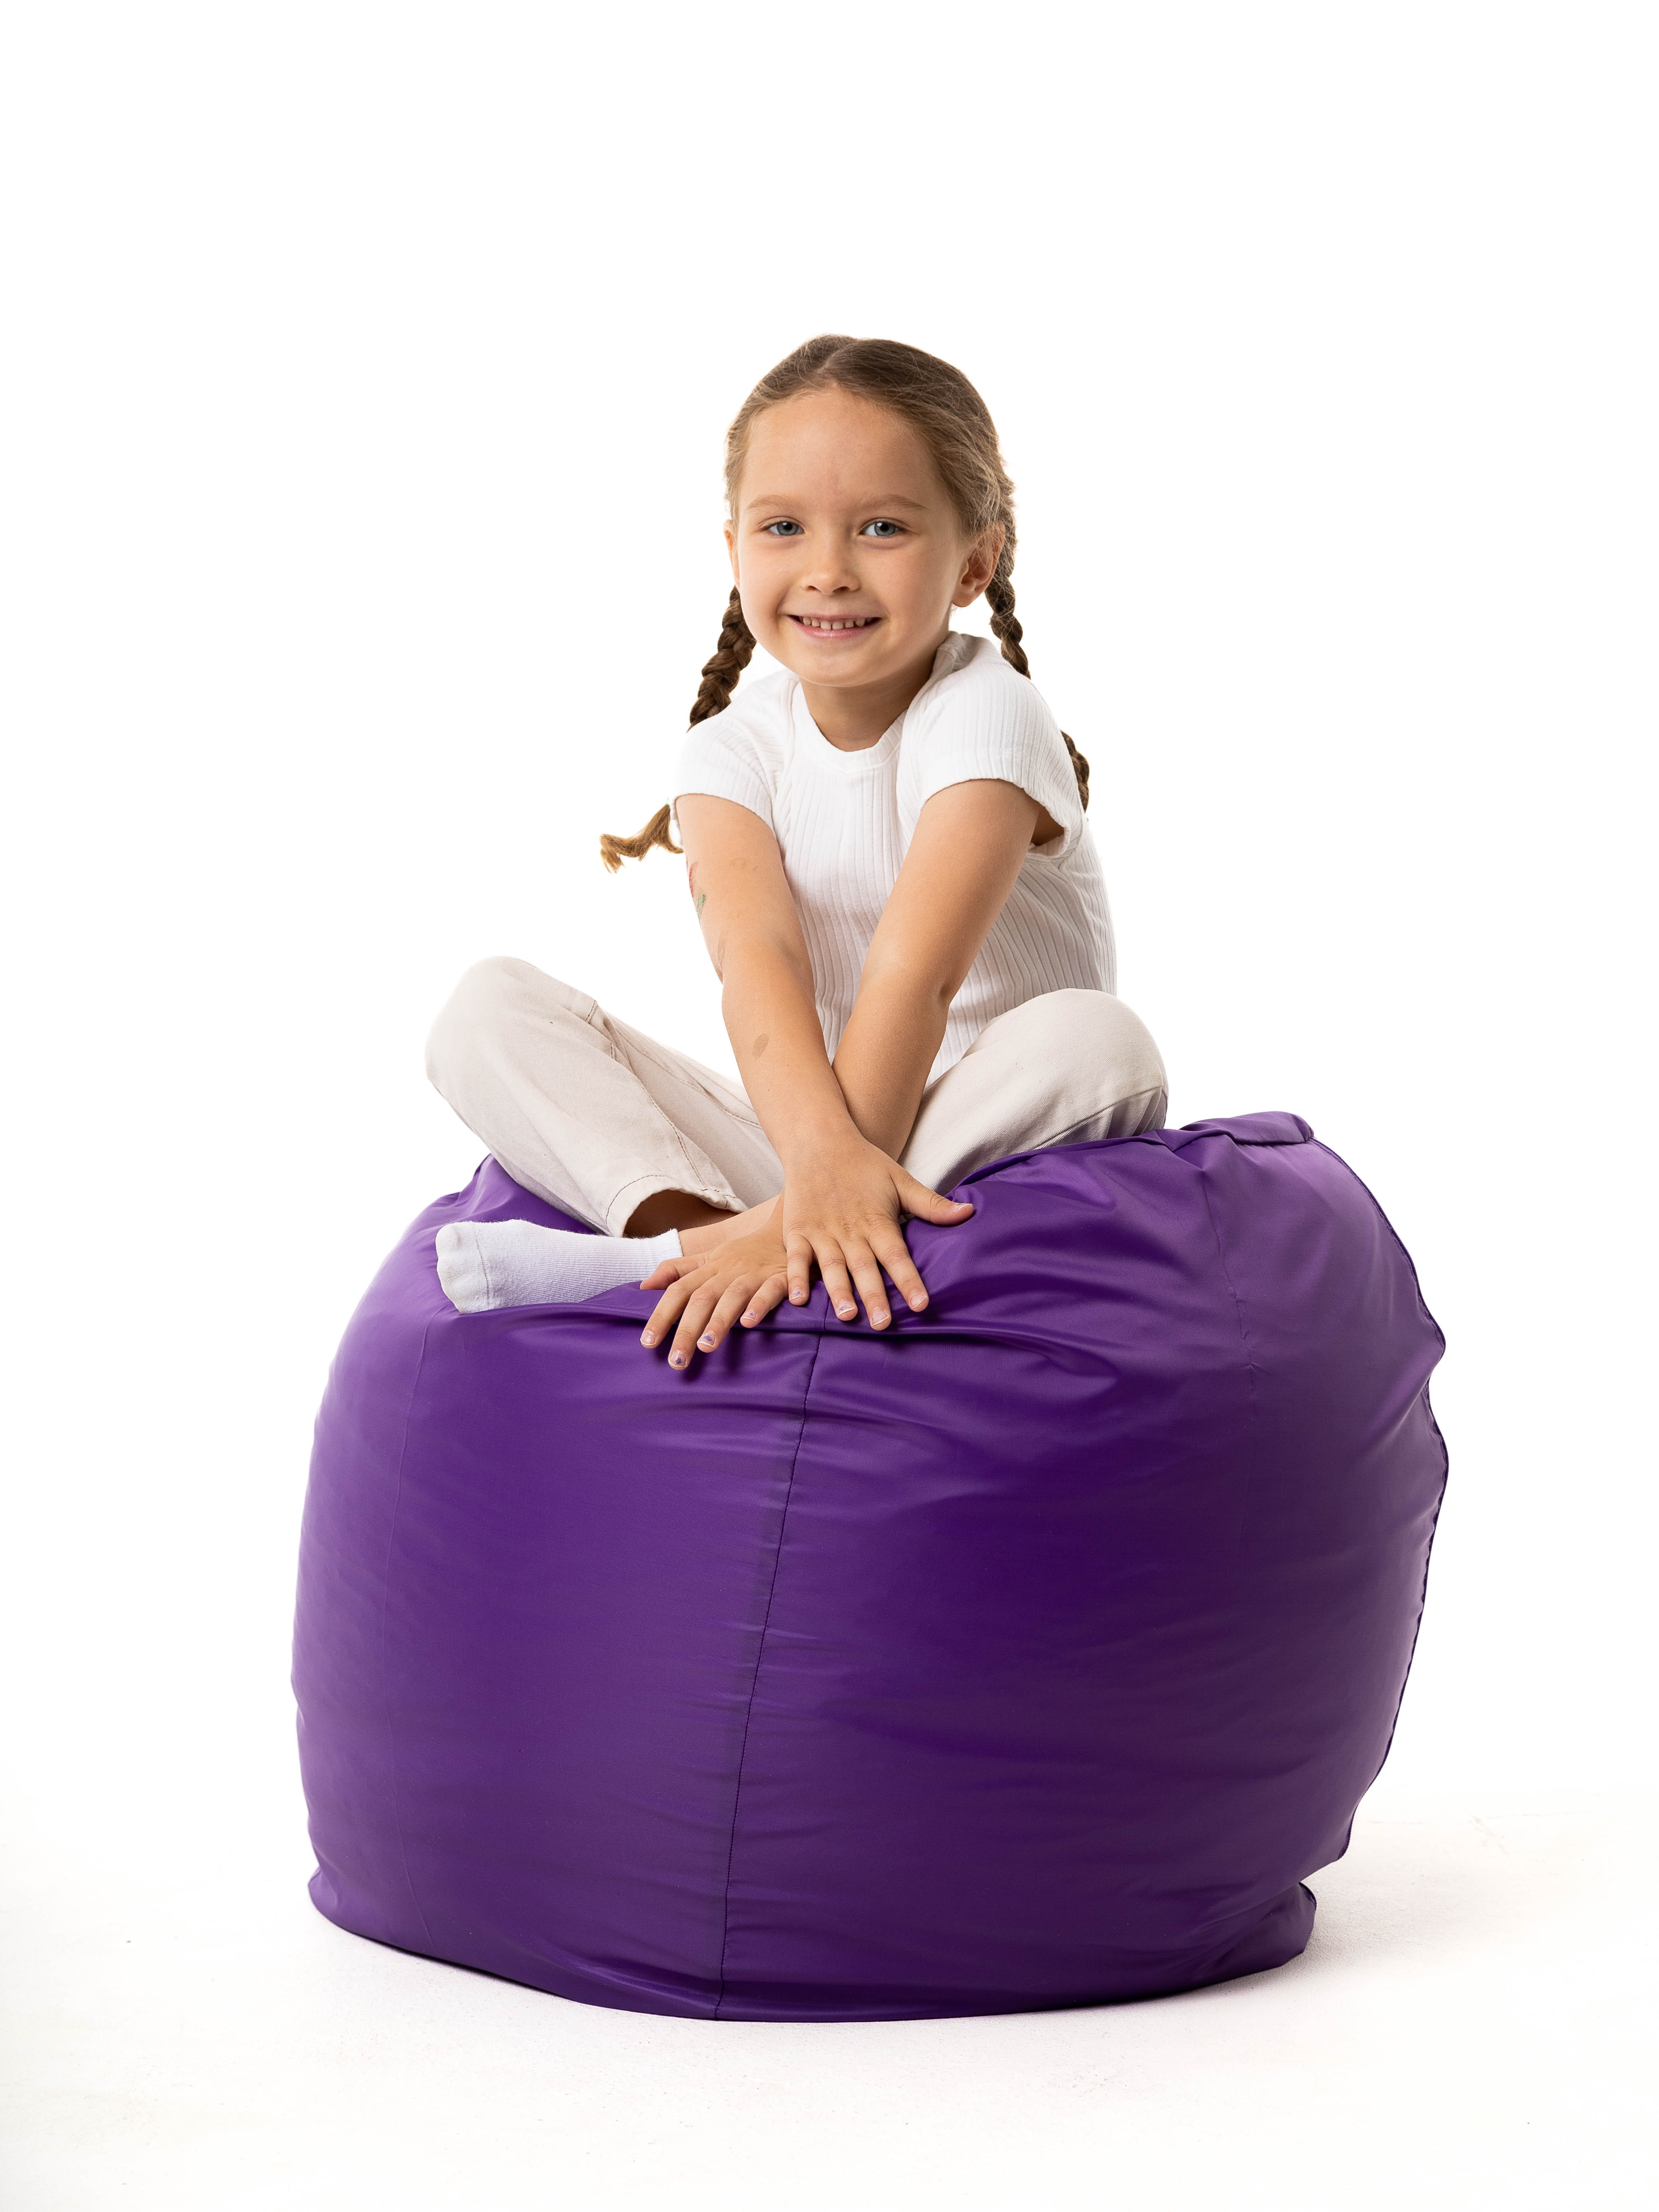 Кресло мешок груша PUFFGARDEN XL фиолетовое оксфорд ткань со съемным чехлом - фото 7